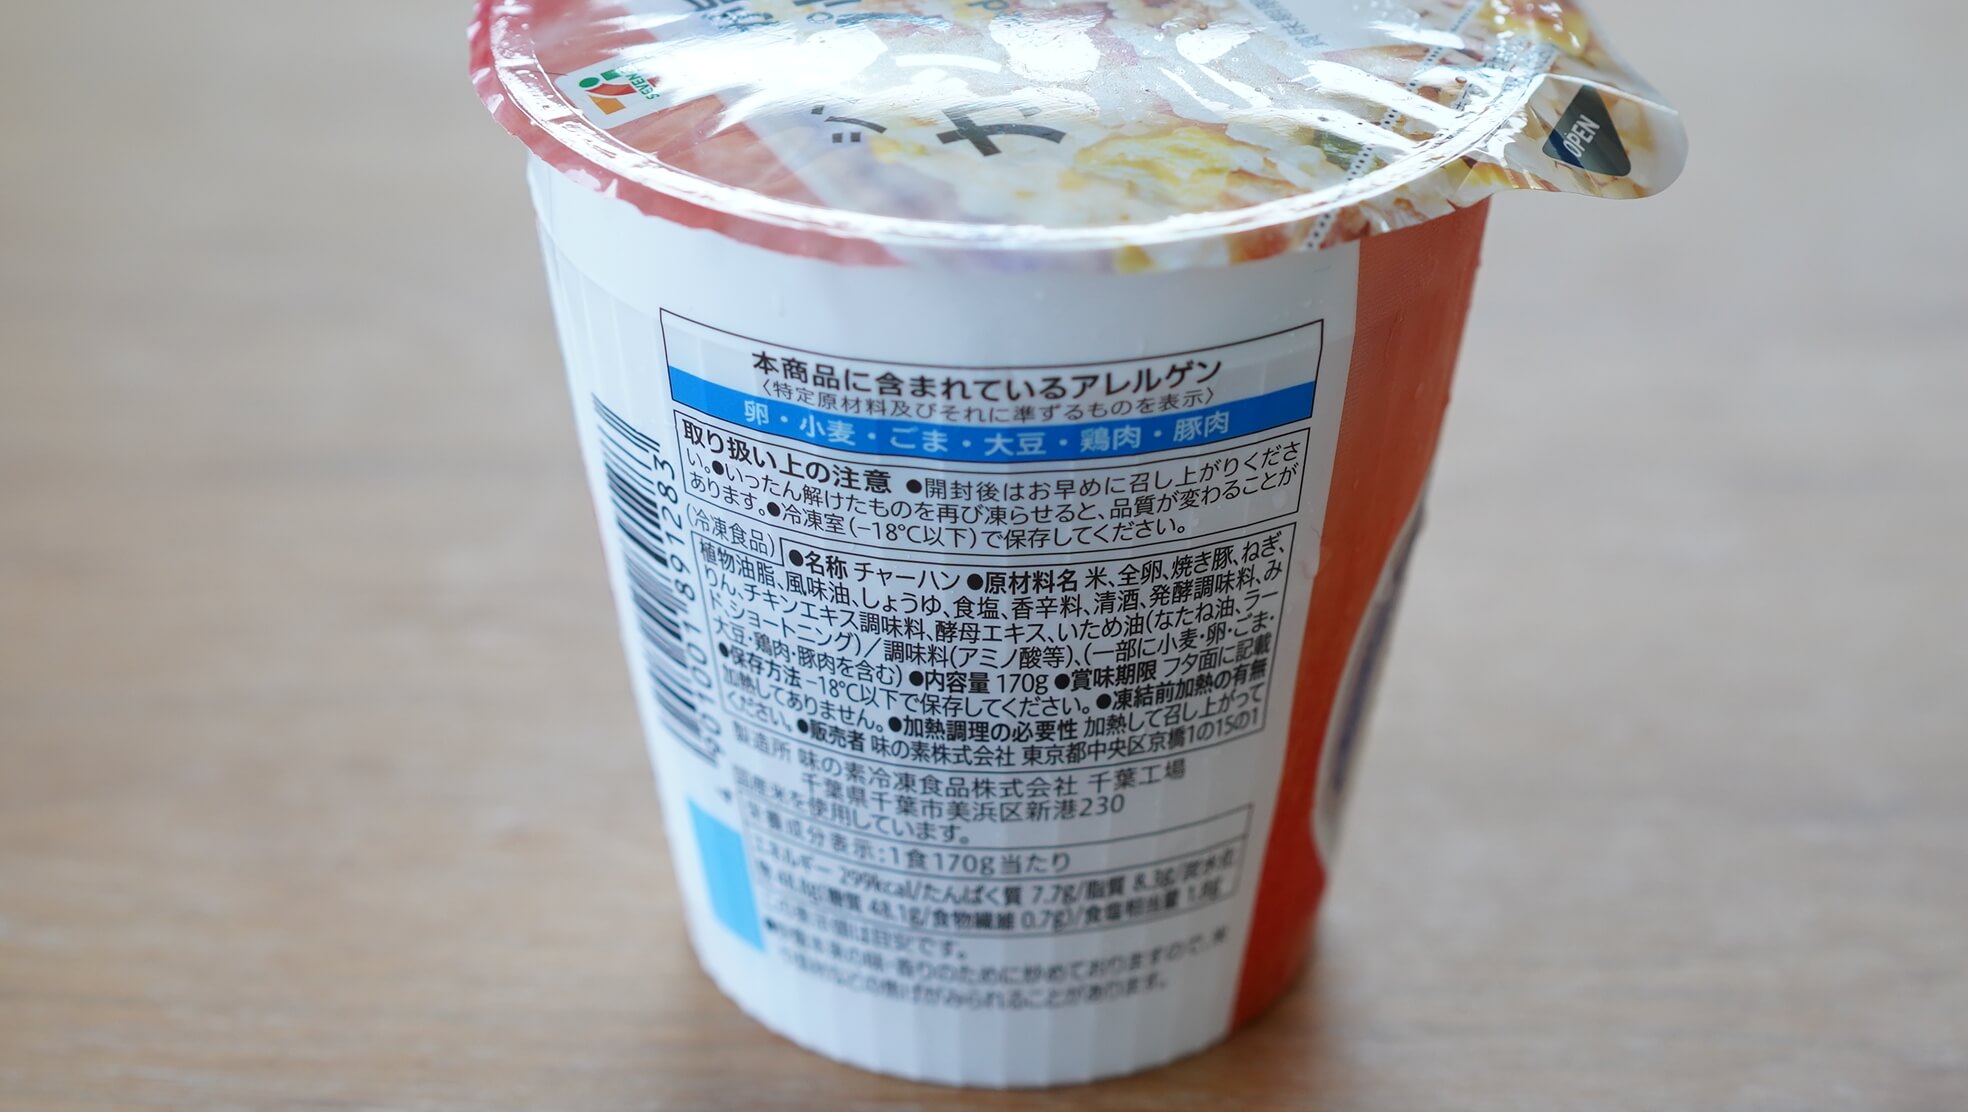 セブンイレブンのカップ型冷凍食品「シンプルで美味しい炒飯」の背面の写真